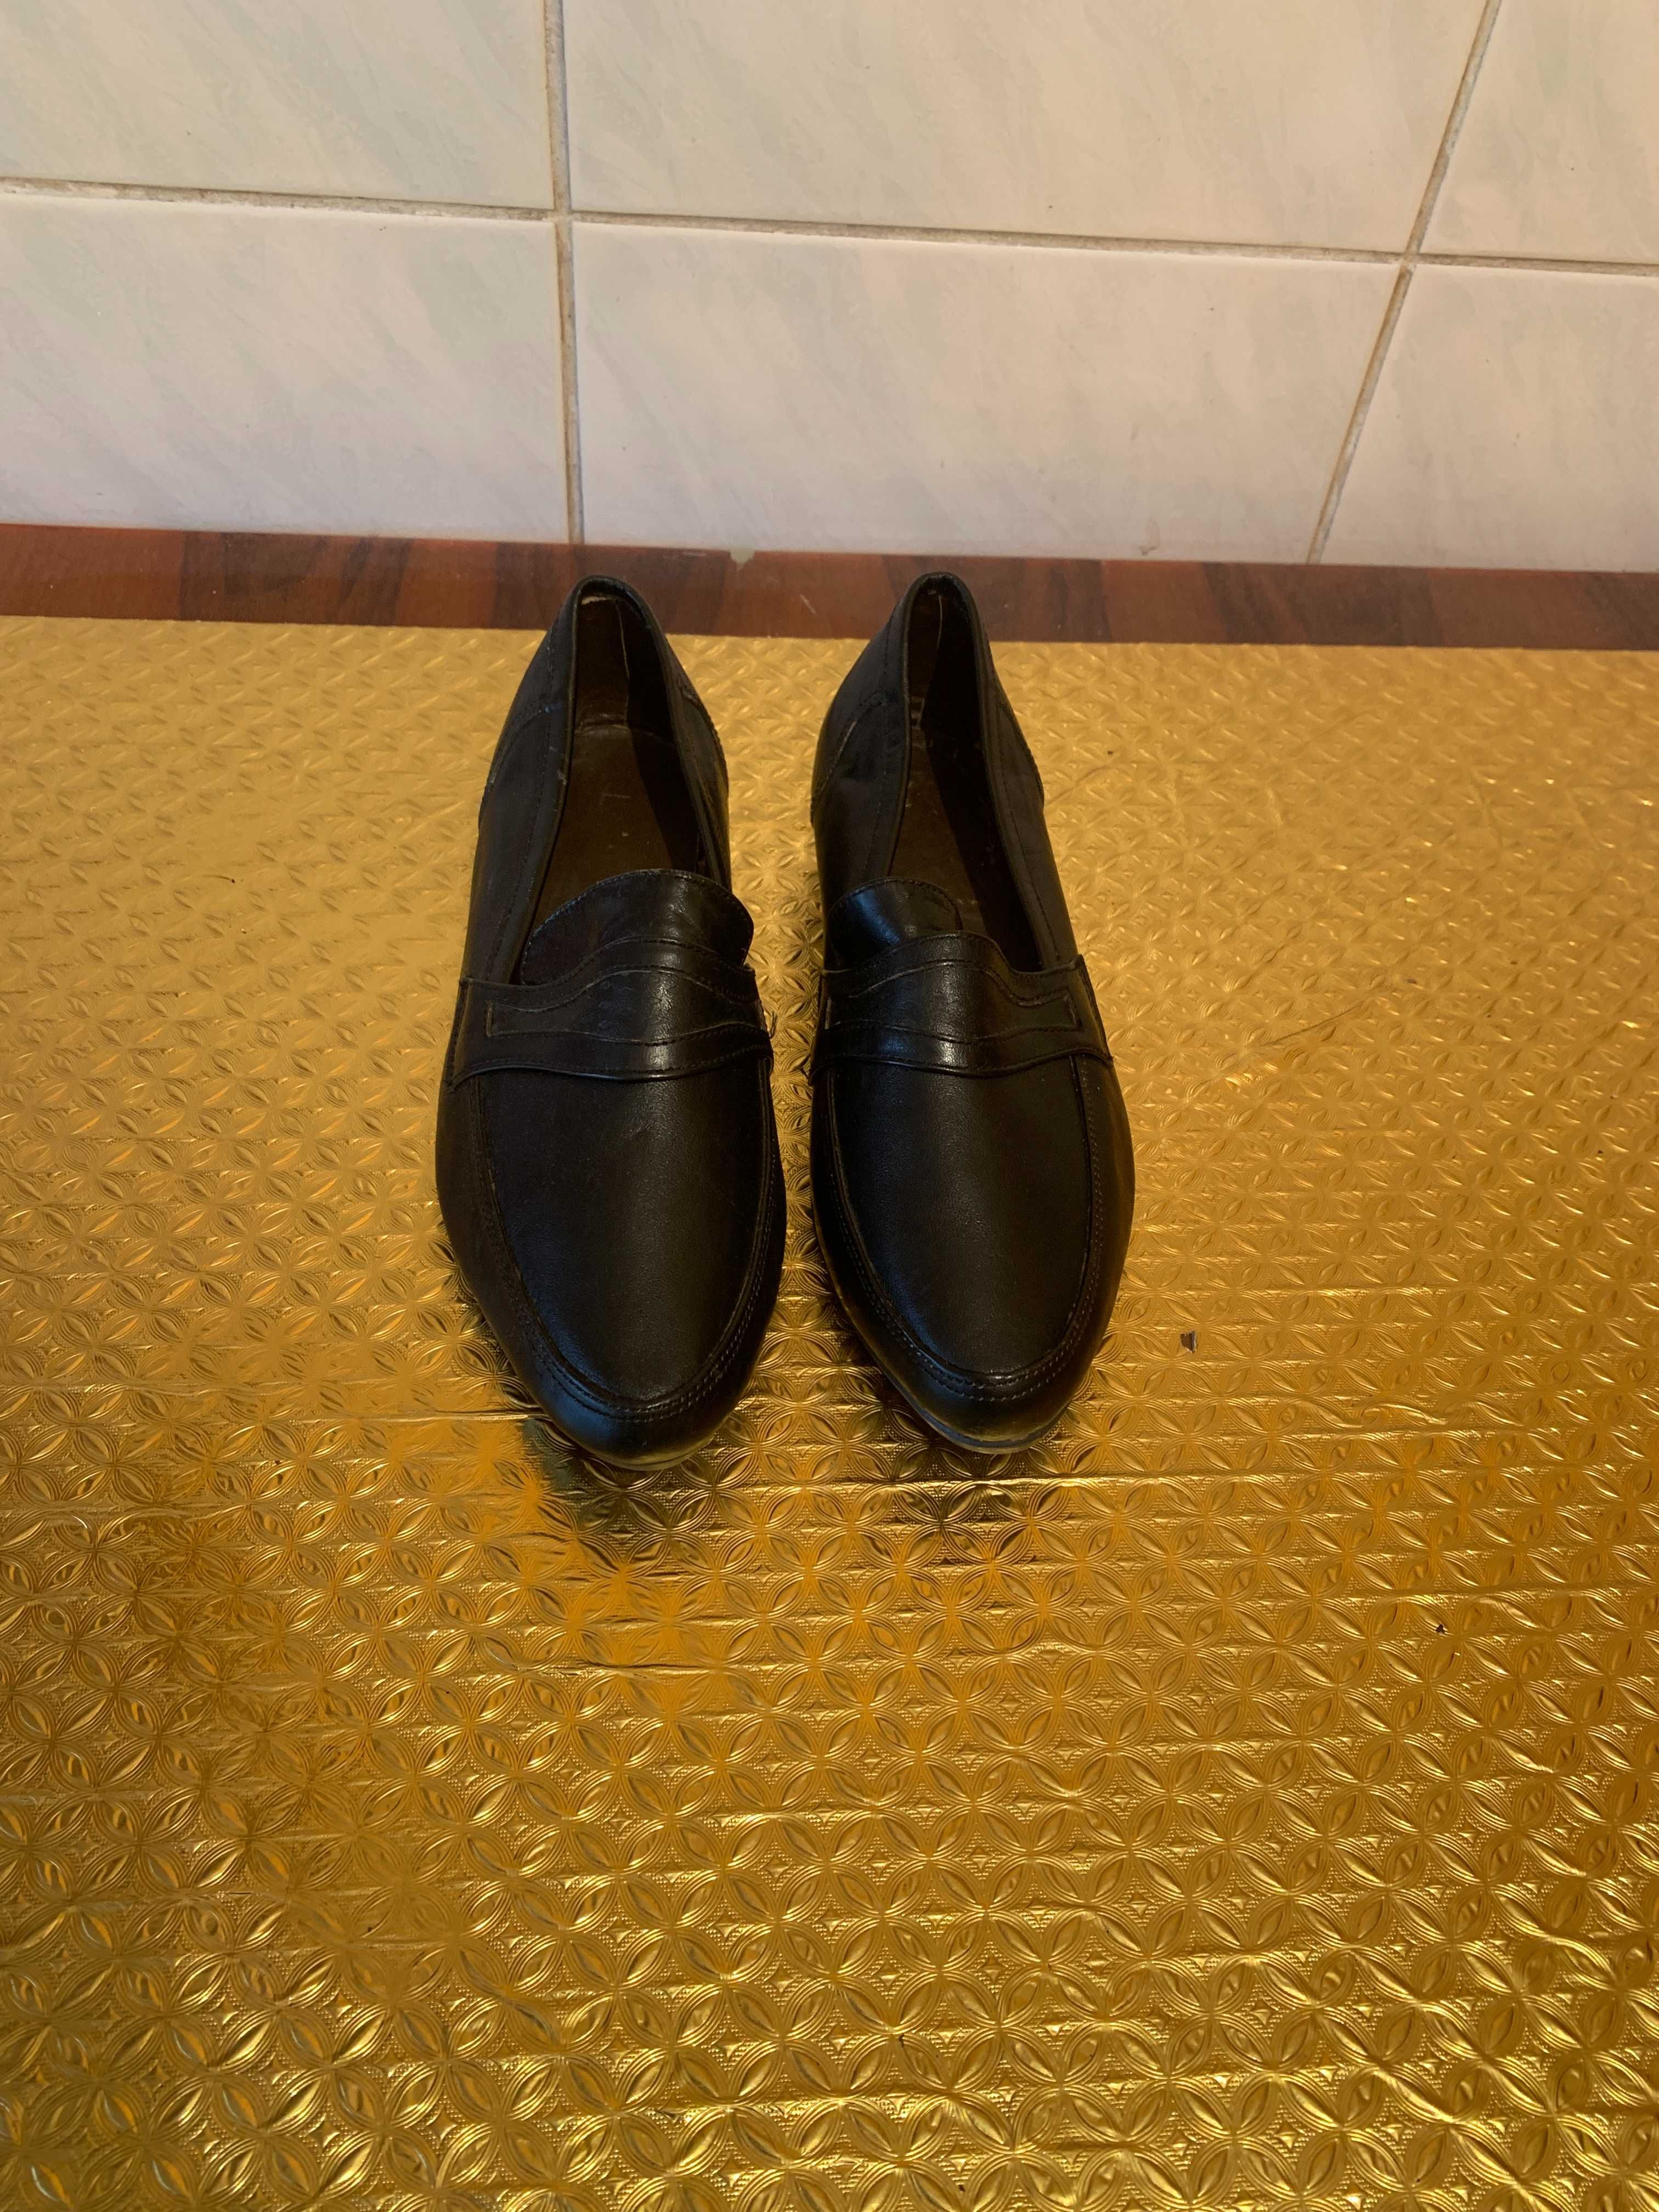 Продам туфли мужские из натуральной кожи чер. цвета (сделано в Турции)